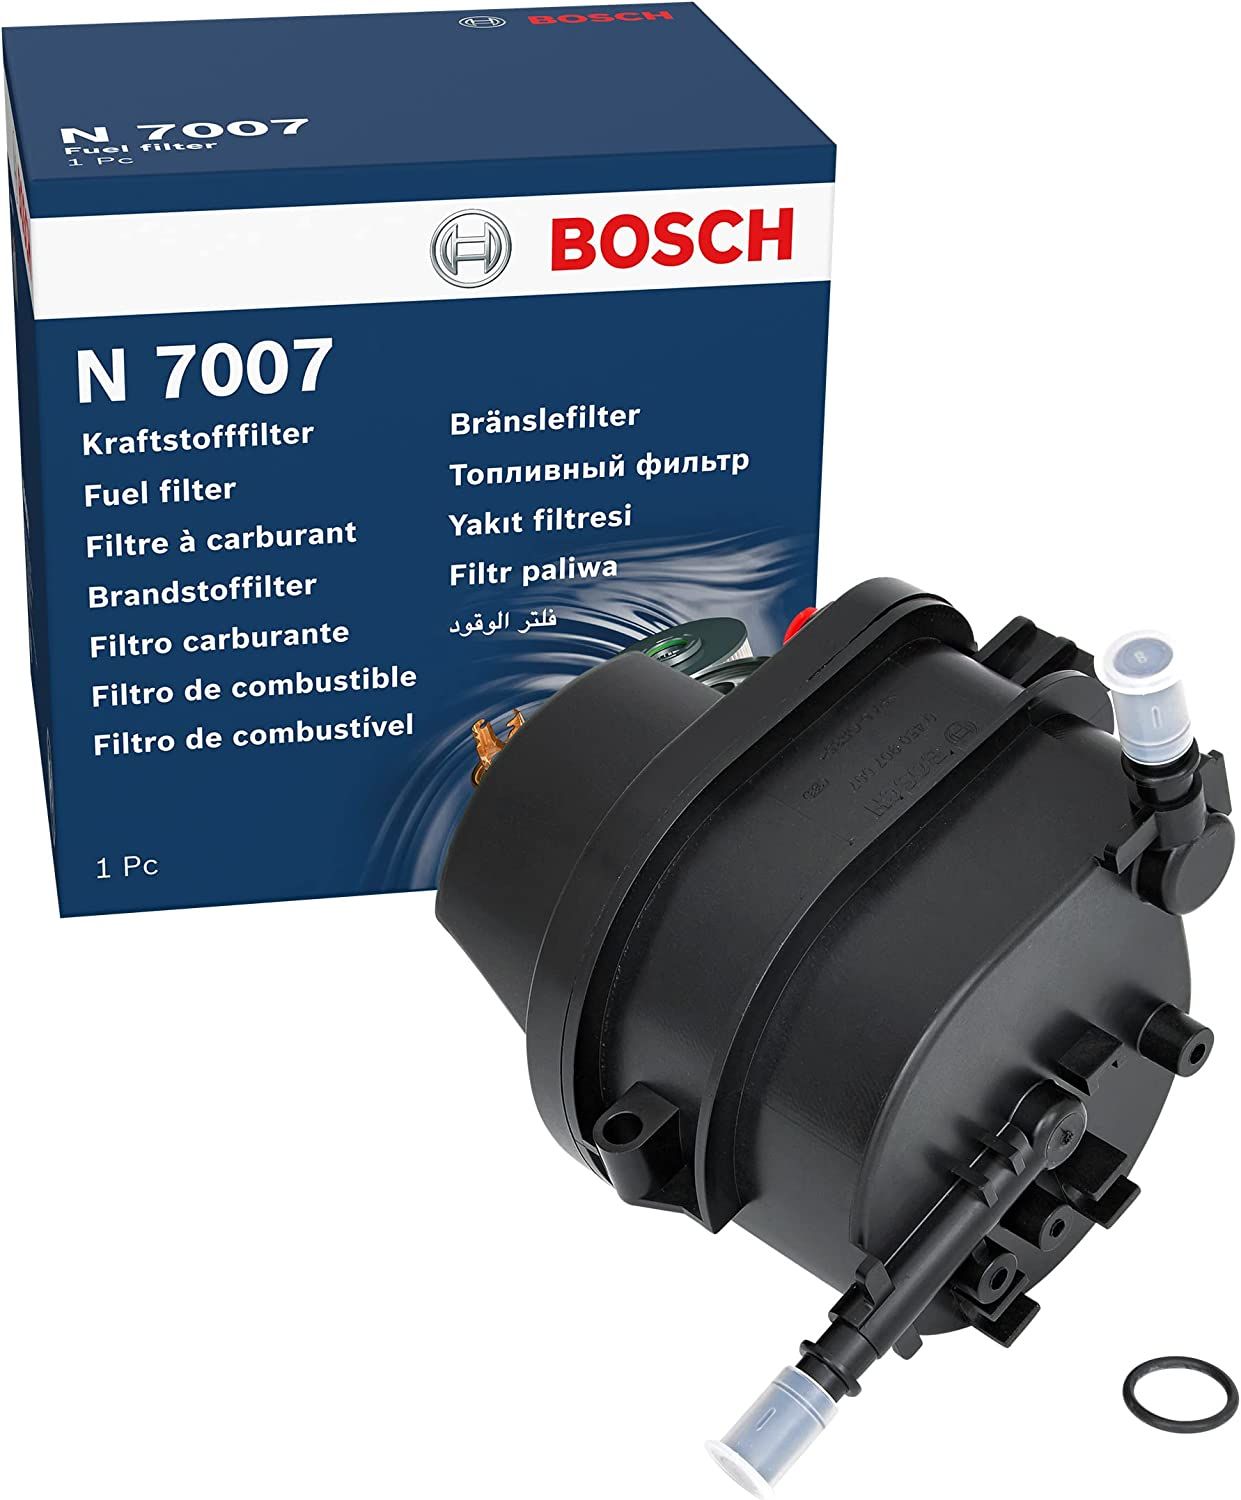 Citroen C1 1.4 Hdi Dizel Mazot Filtresi Muşursuz Sensörsüz Bosch Marka Alman Ürünü 0450907007